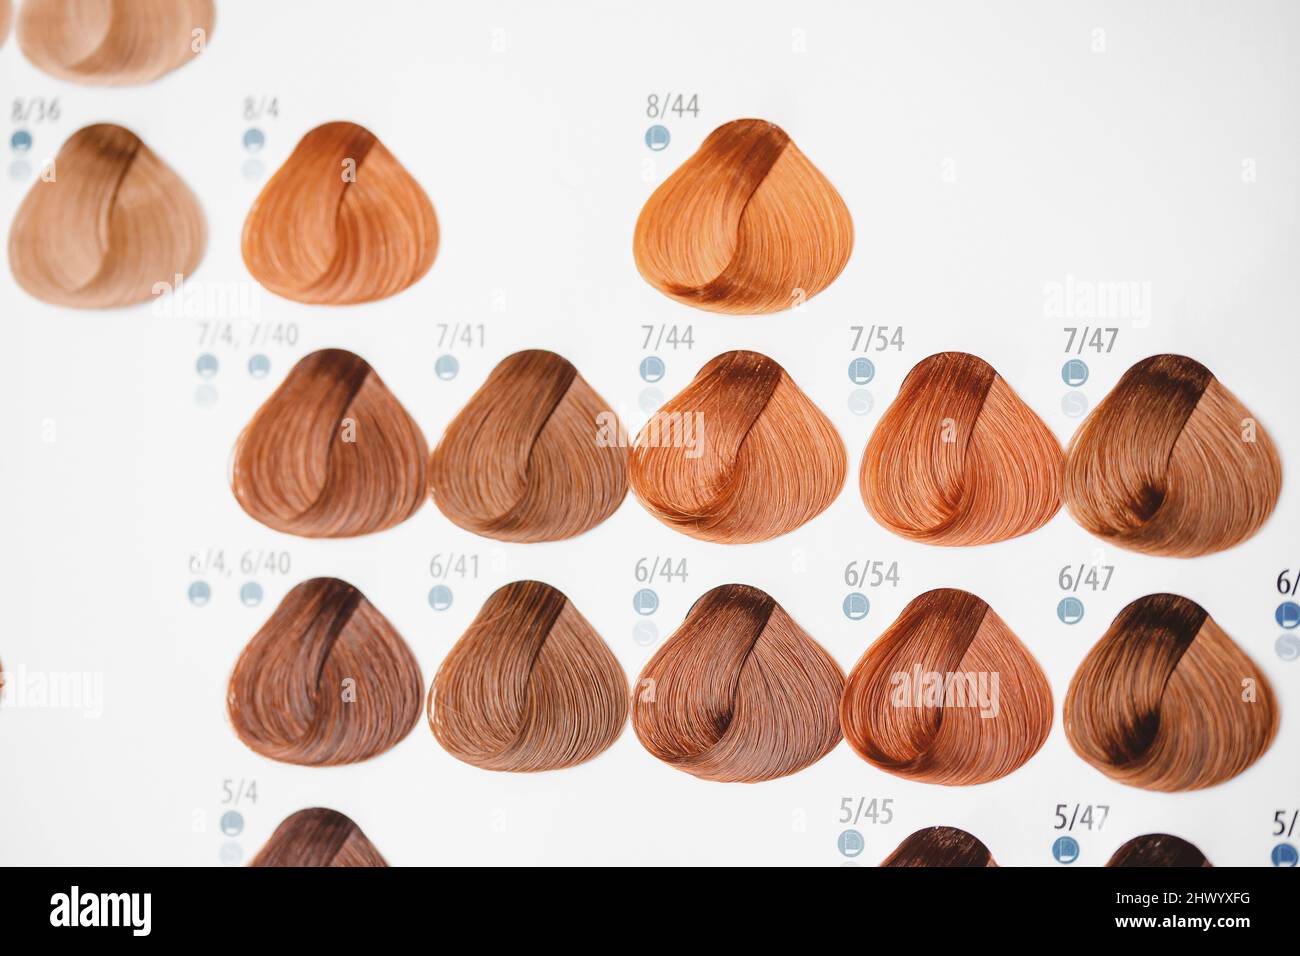 Farbkarte für Tönungen. Haar Farbpalette mit einer Vielzahl von Muster.  Gefärbte Haare Farbe Proben auf einer Karte, die in den ordentlichen Reihen  angeordnet. Tönungen. Farbe gesetzt werden. Uhr Stockfotografie - Alamy